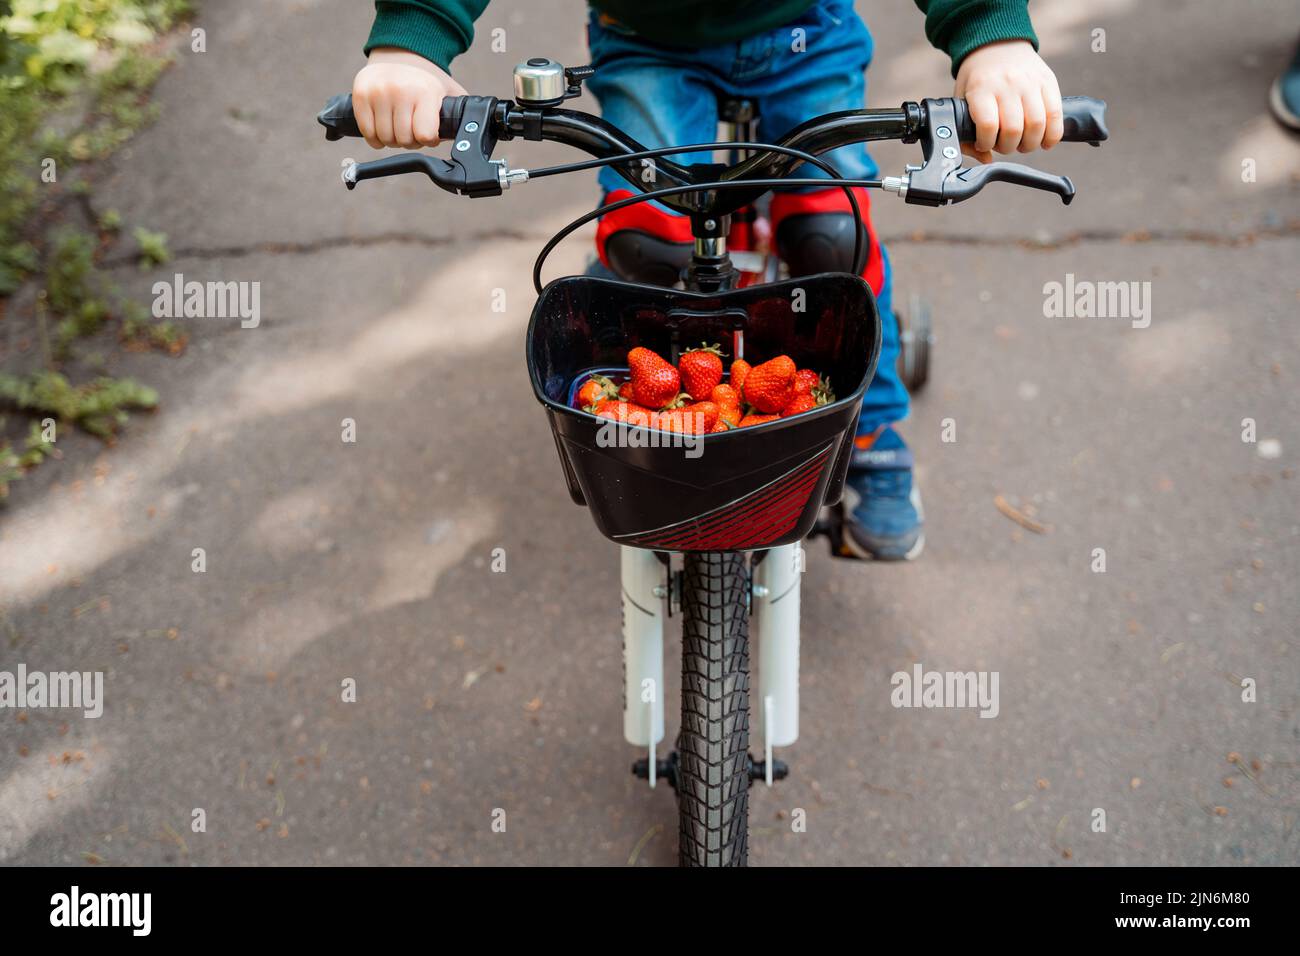 un garçon à vélo porte des fraises dans un panier Banque D'Images